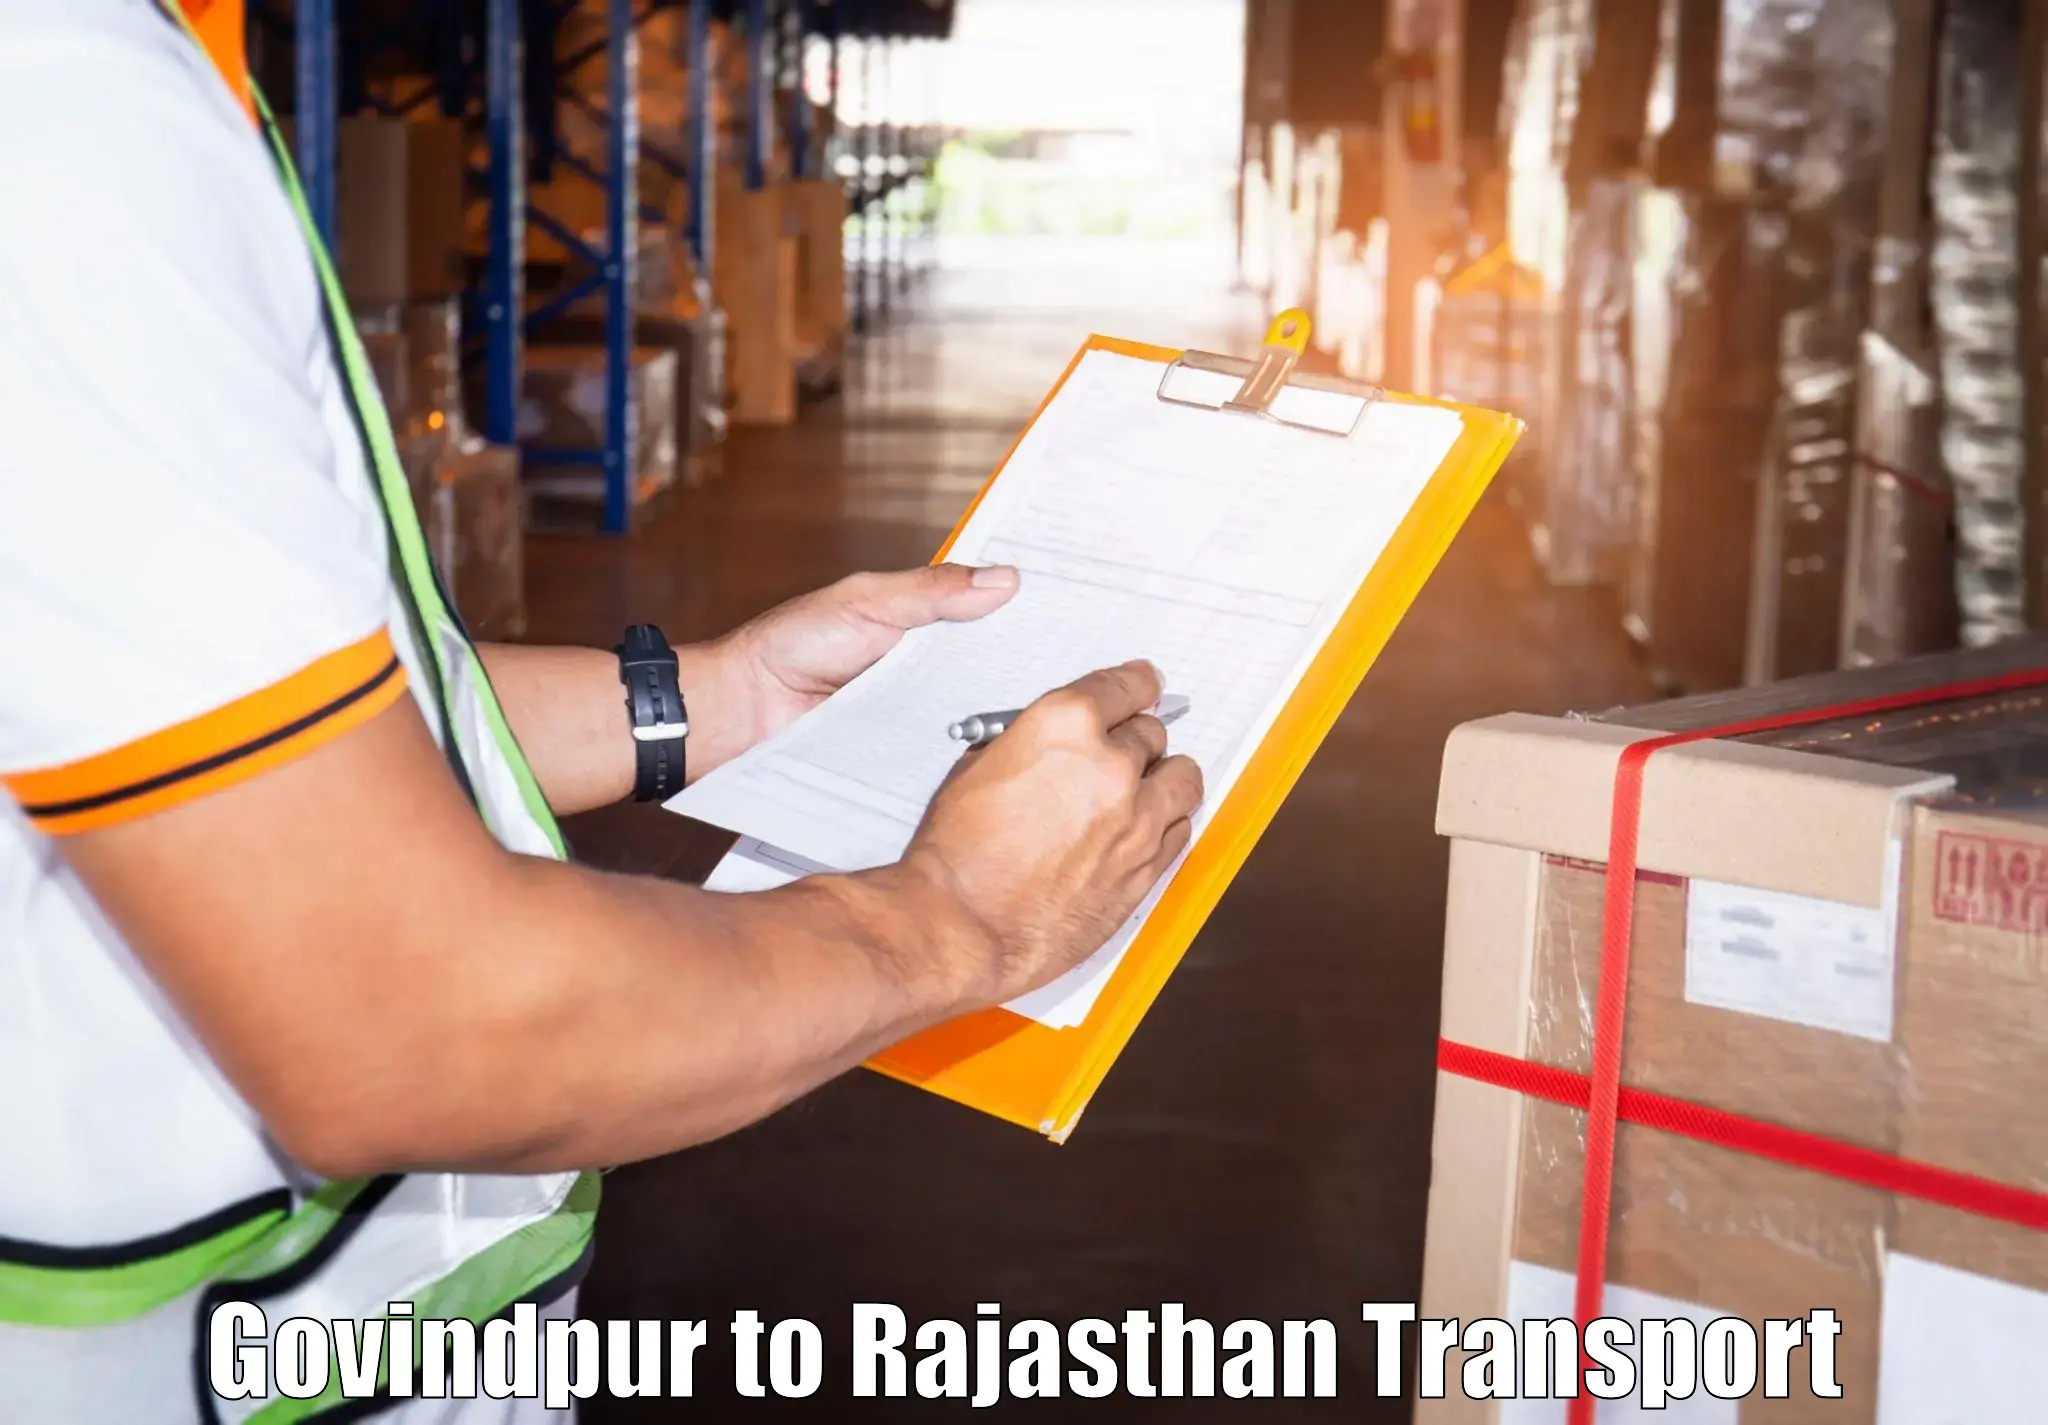 Truck transport companies in India Govindpur to Bari Dholpur